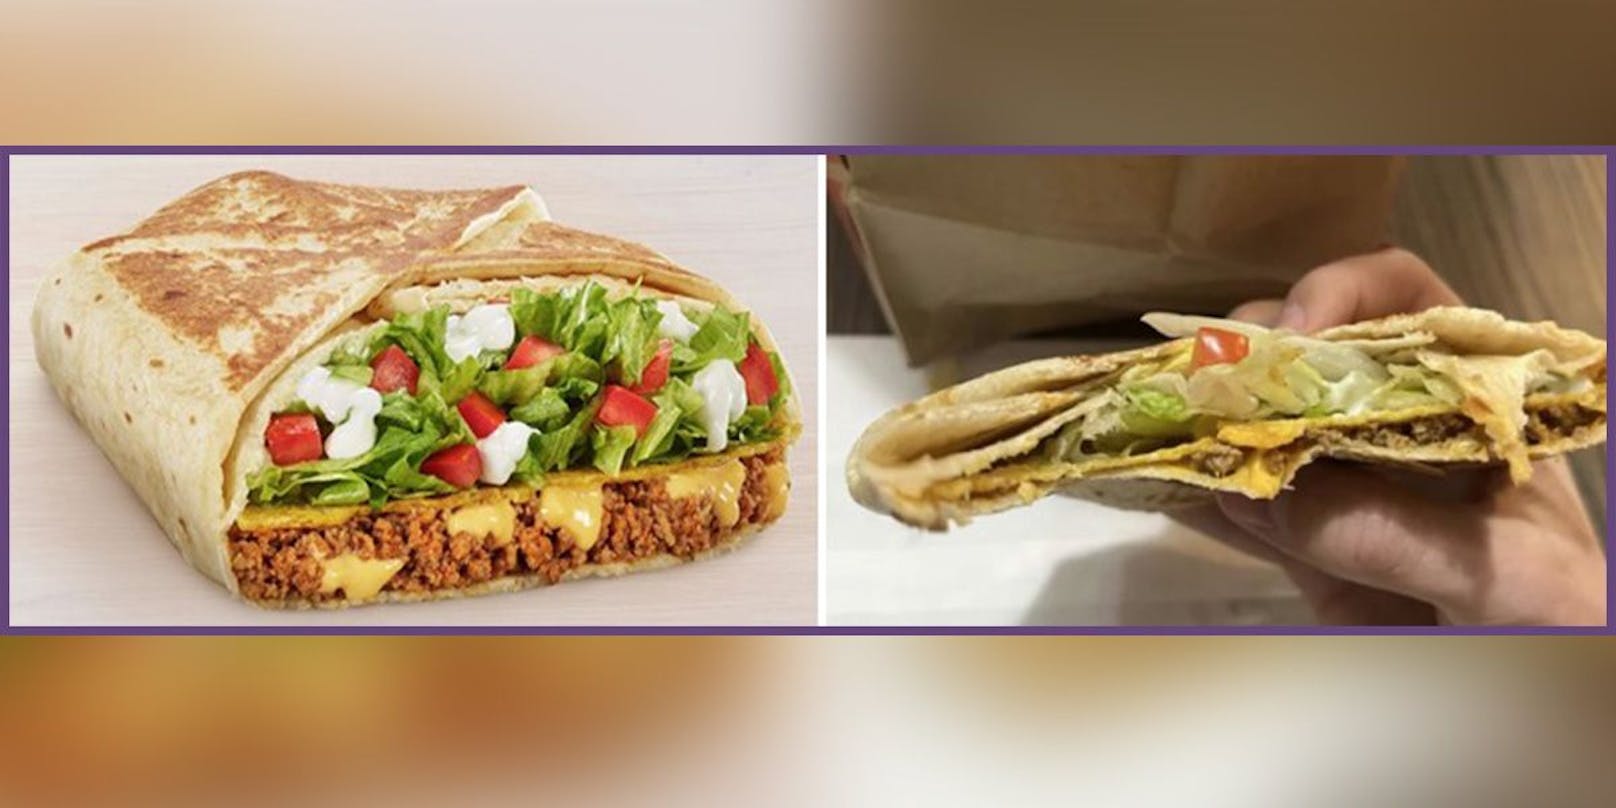 Links: Wie der "Grande Crunchwrap" in der Taco-Bell-Werbung präsentiert wird, rechts wie er in Wirklichkeit aussieht.